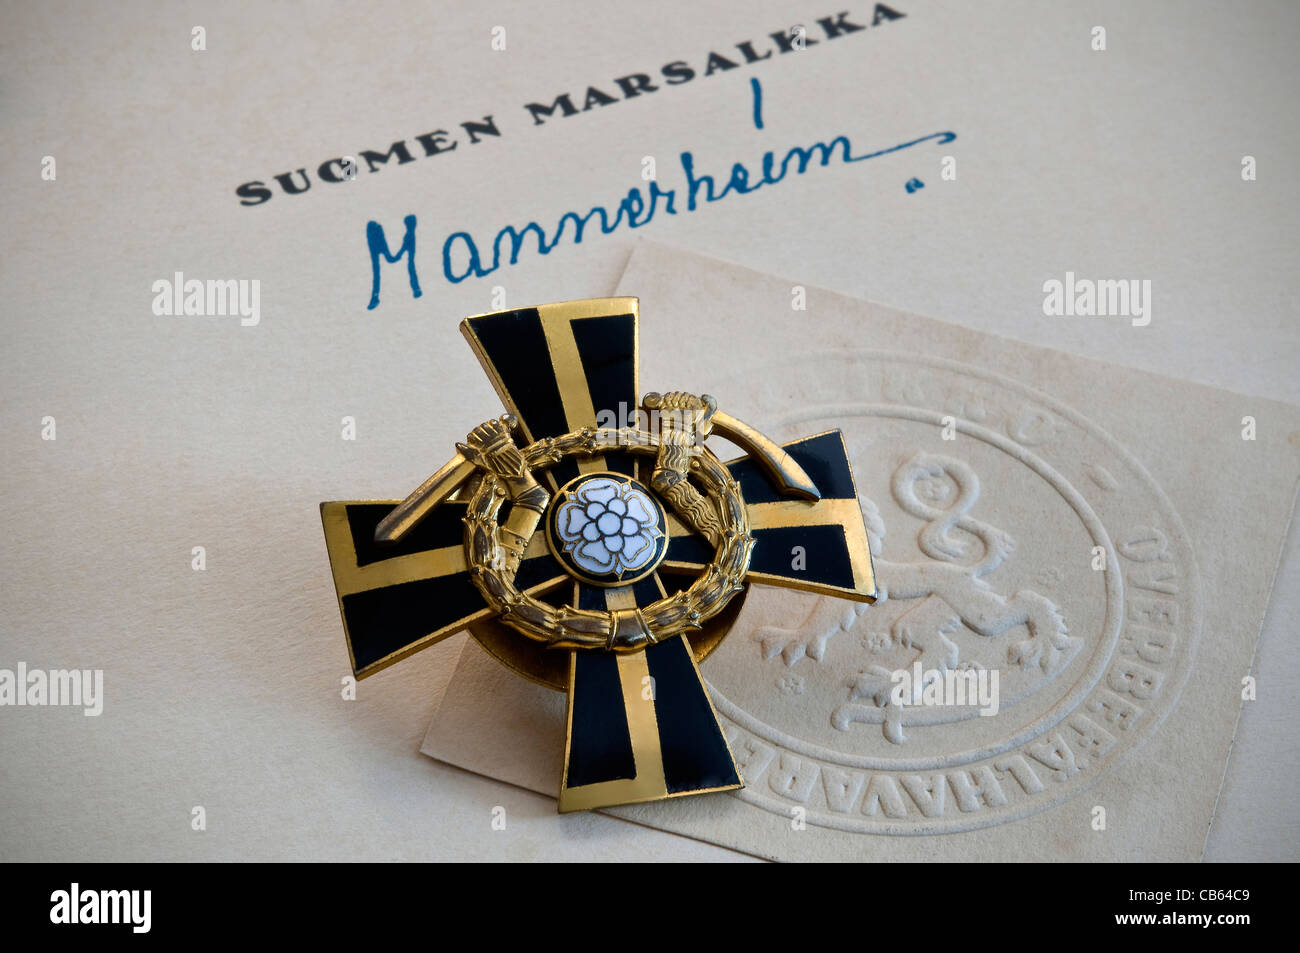 « La Croix de Mannerheim », meilleure médaille militaire finlandaise et certificat signé, décerné pour la galanterie ostentatoire qui combat l'URSS pendant la Seconde Guerre mondiale Banque D'Images